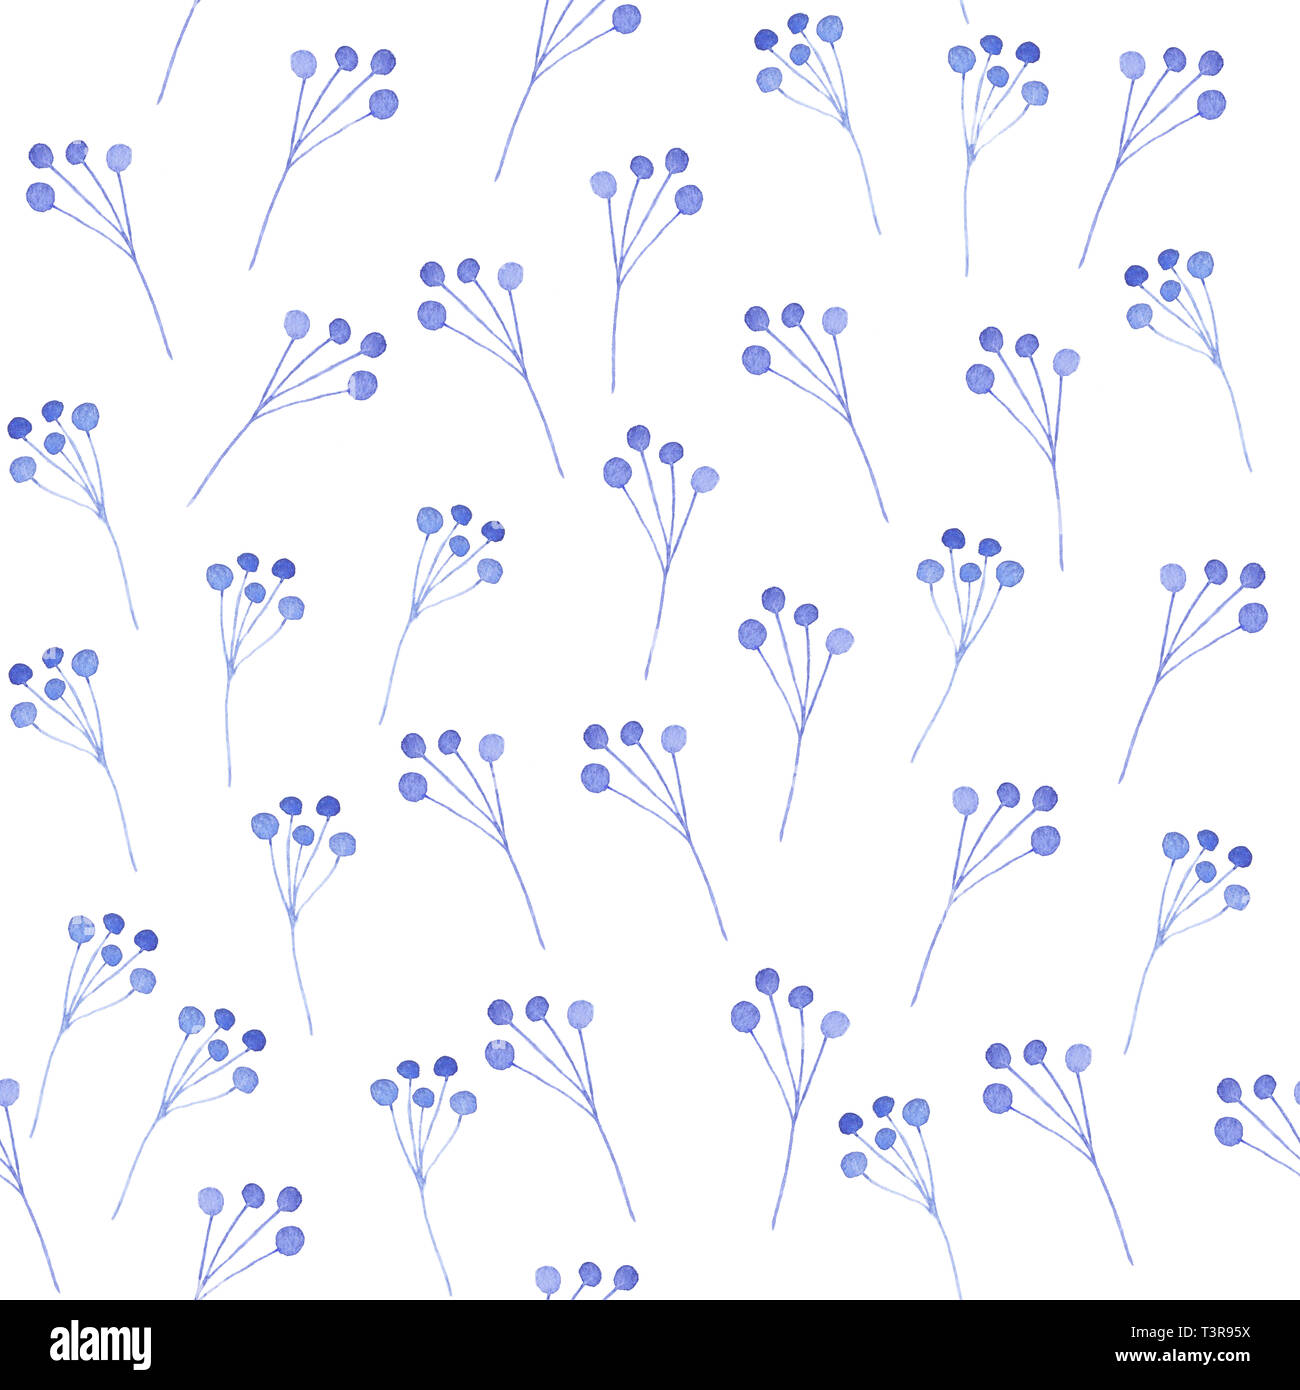 Disegno ad acquerello del blu foglie, rami e fiori Foto Stock